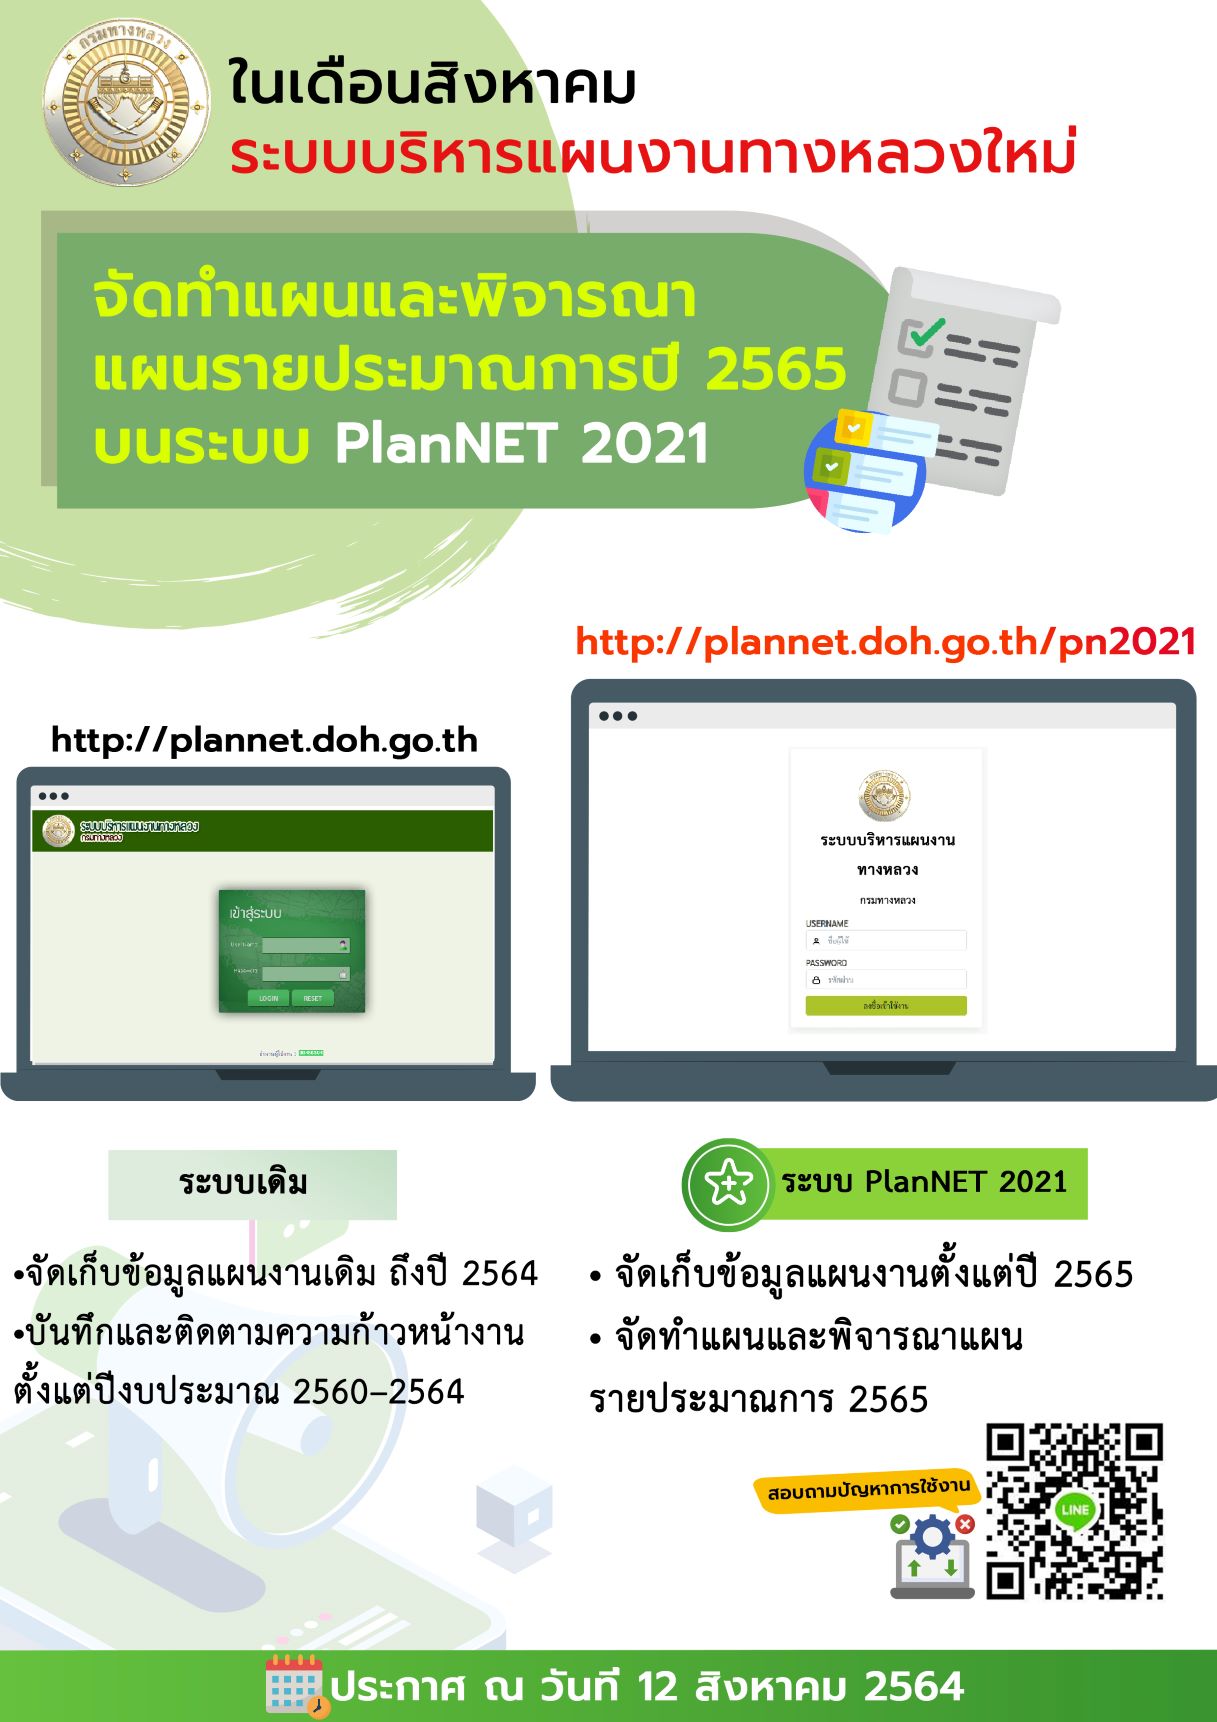 PLANNET 2021